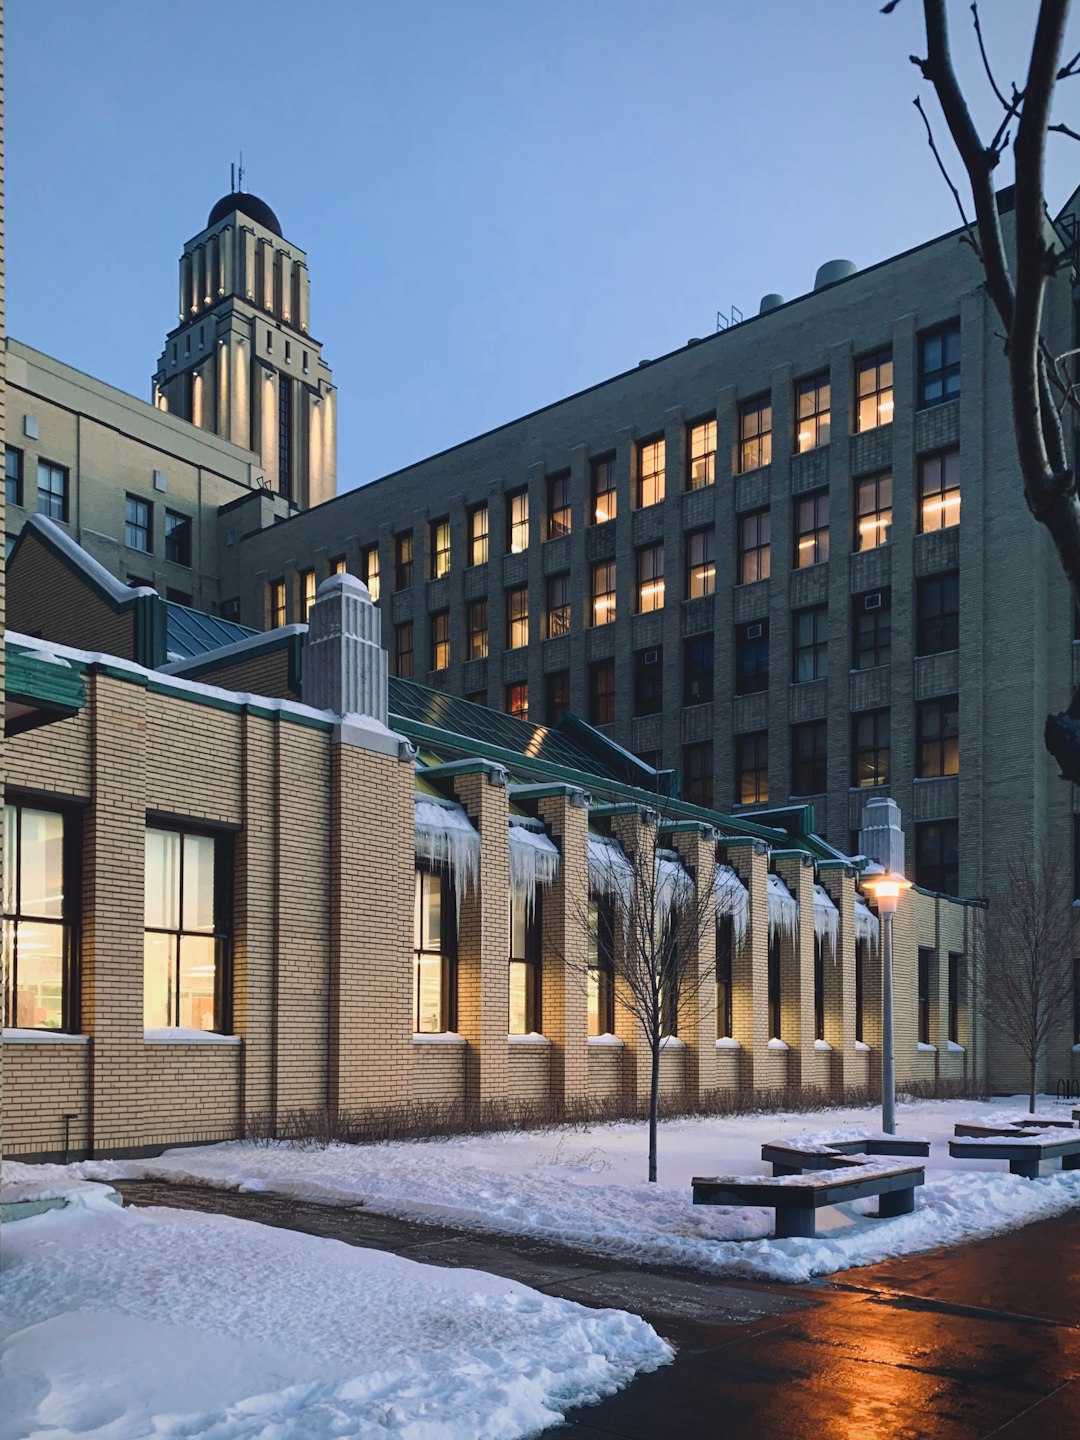 Landmark photo spot Université de Montréal Saint-Henri